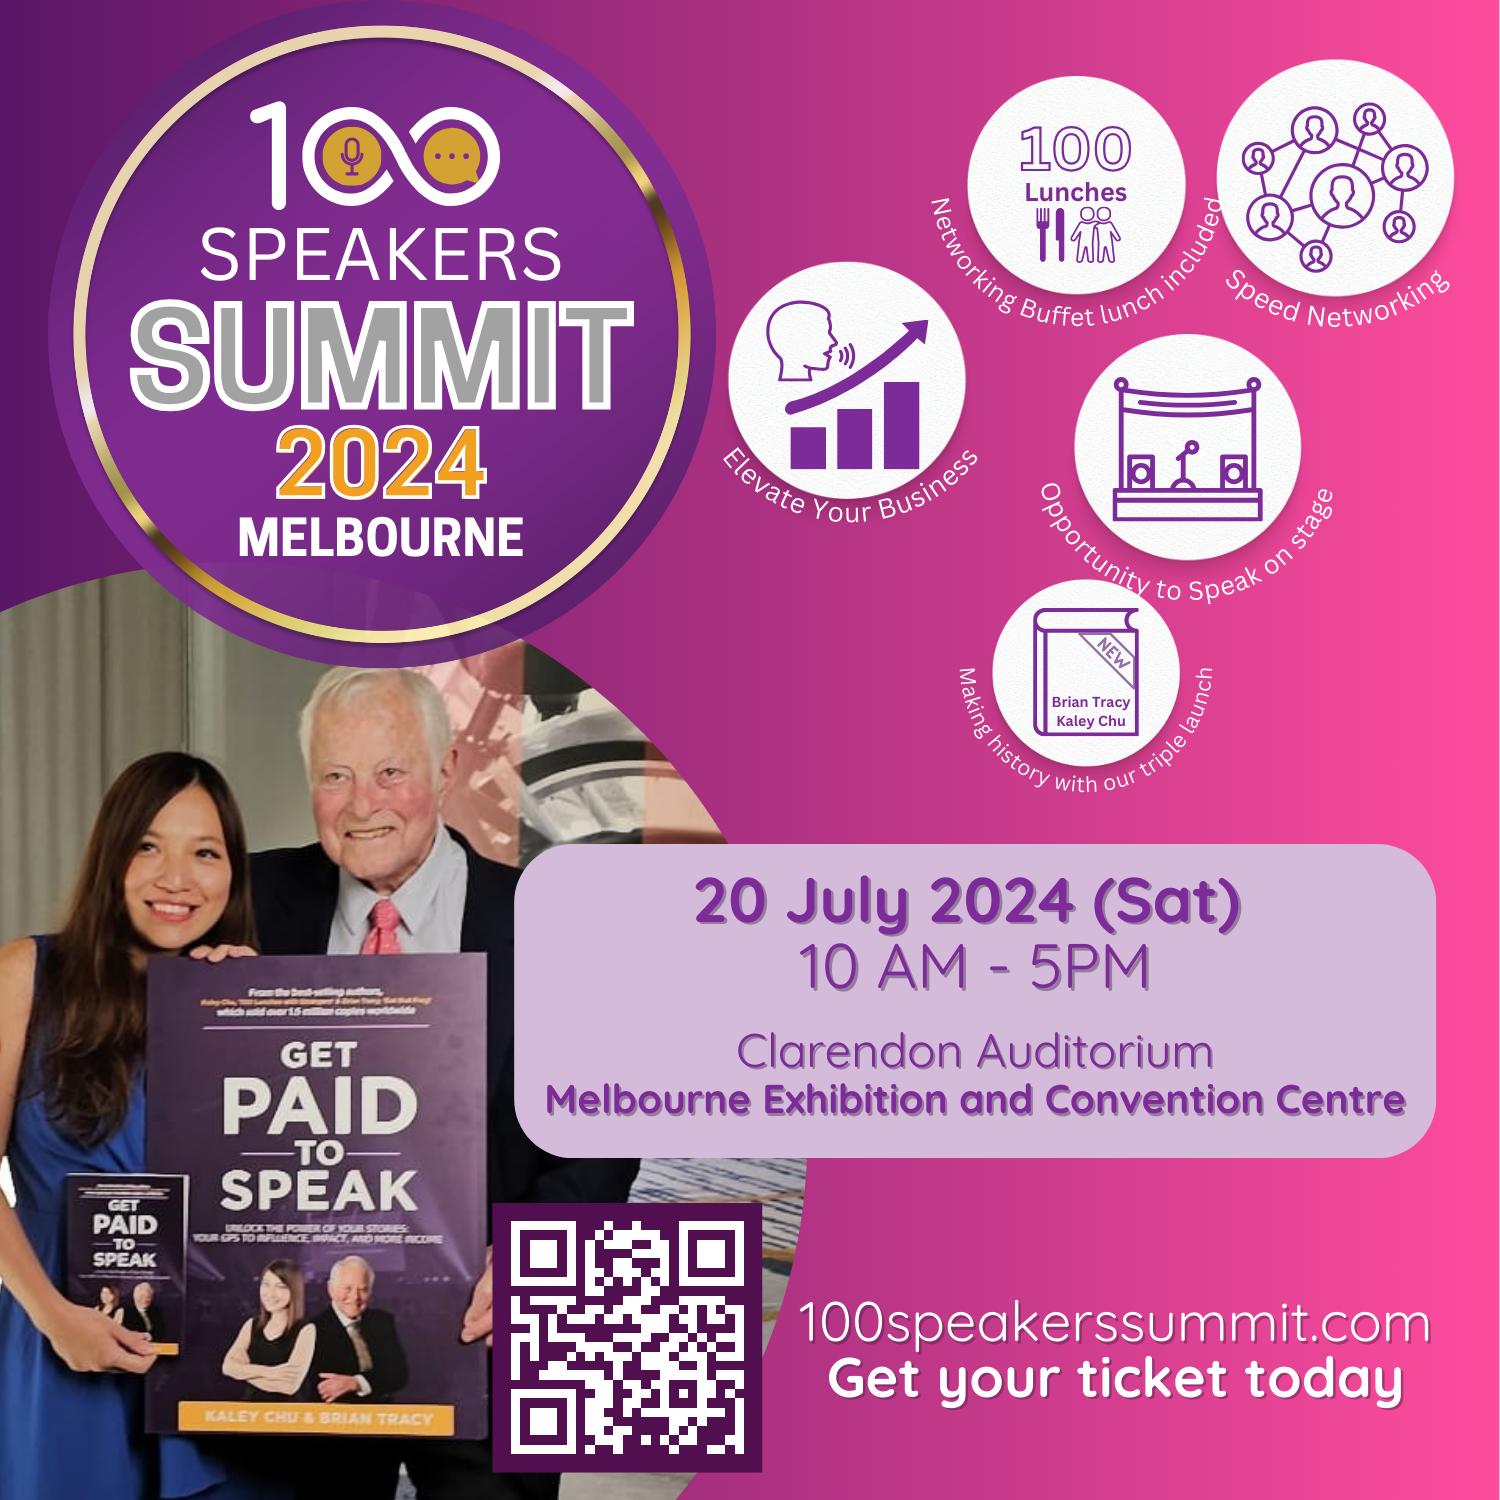 100-speakers-summit-2024-listing-image